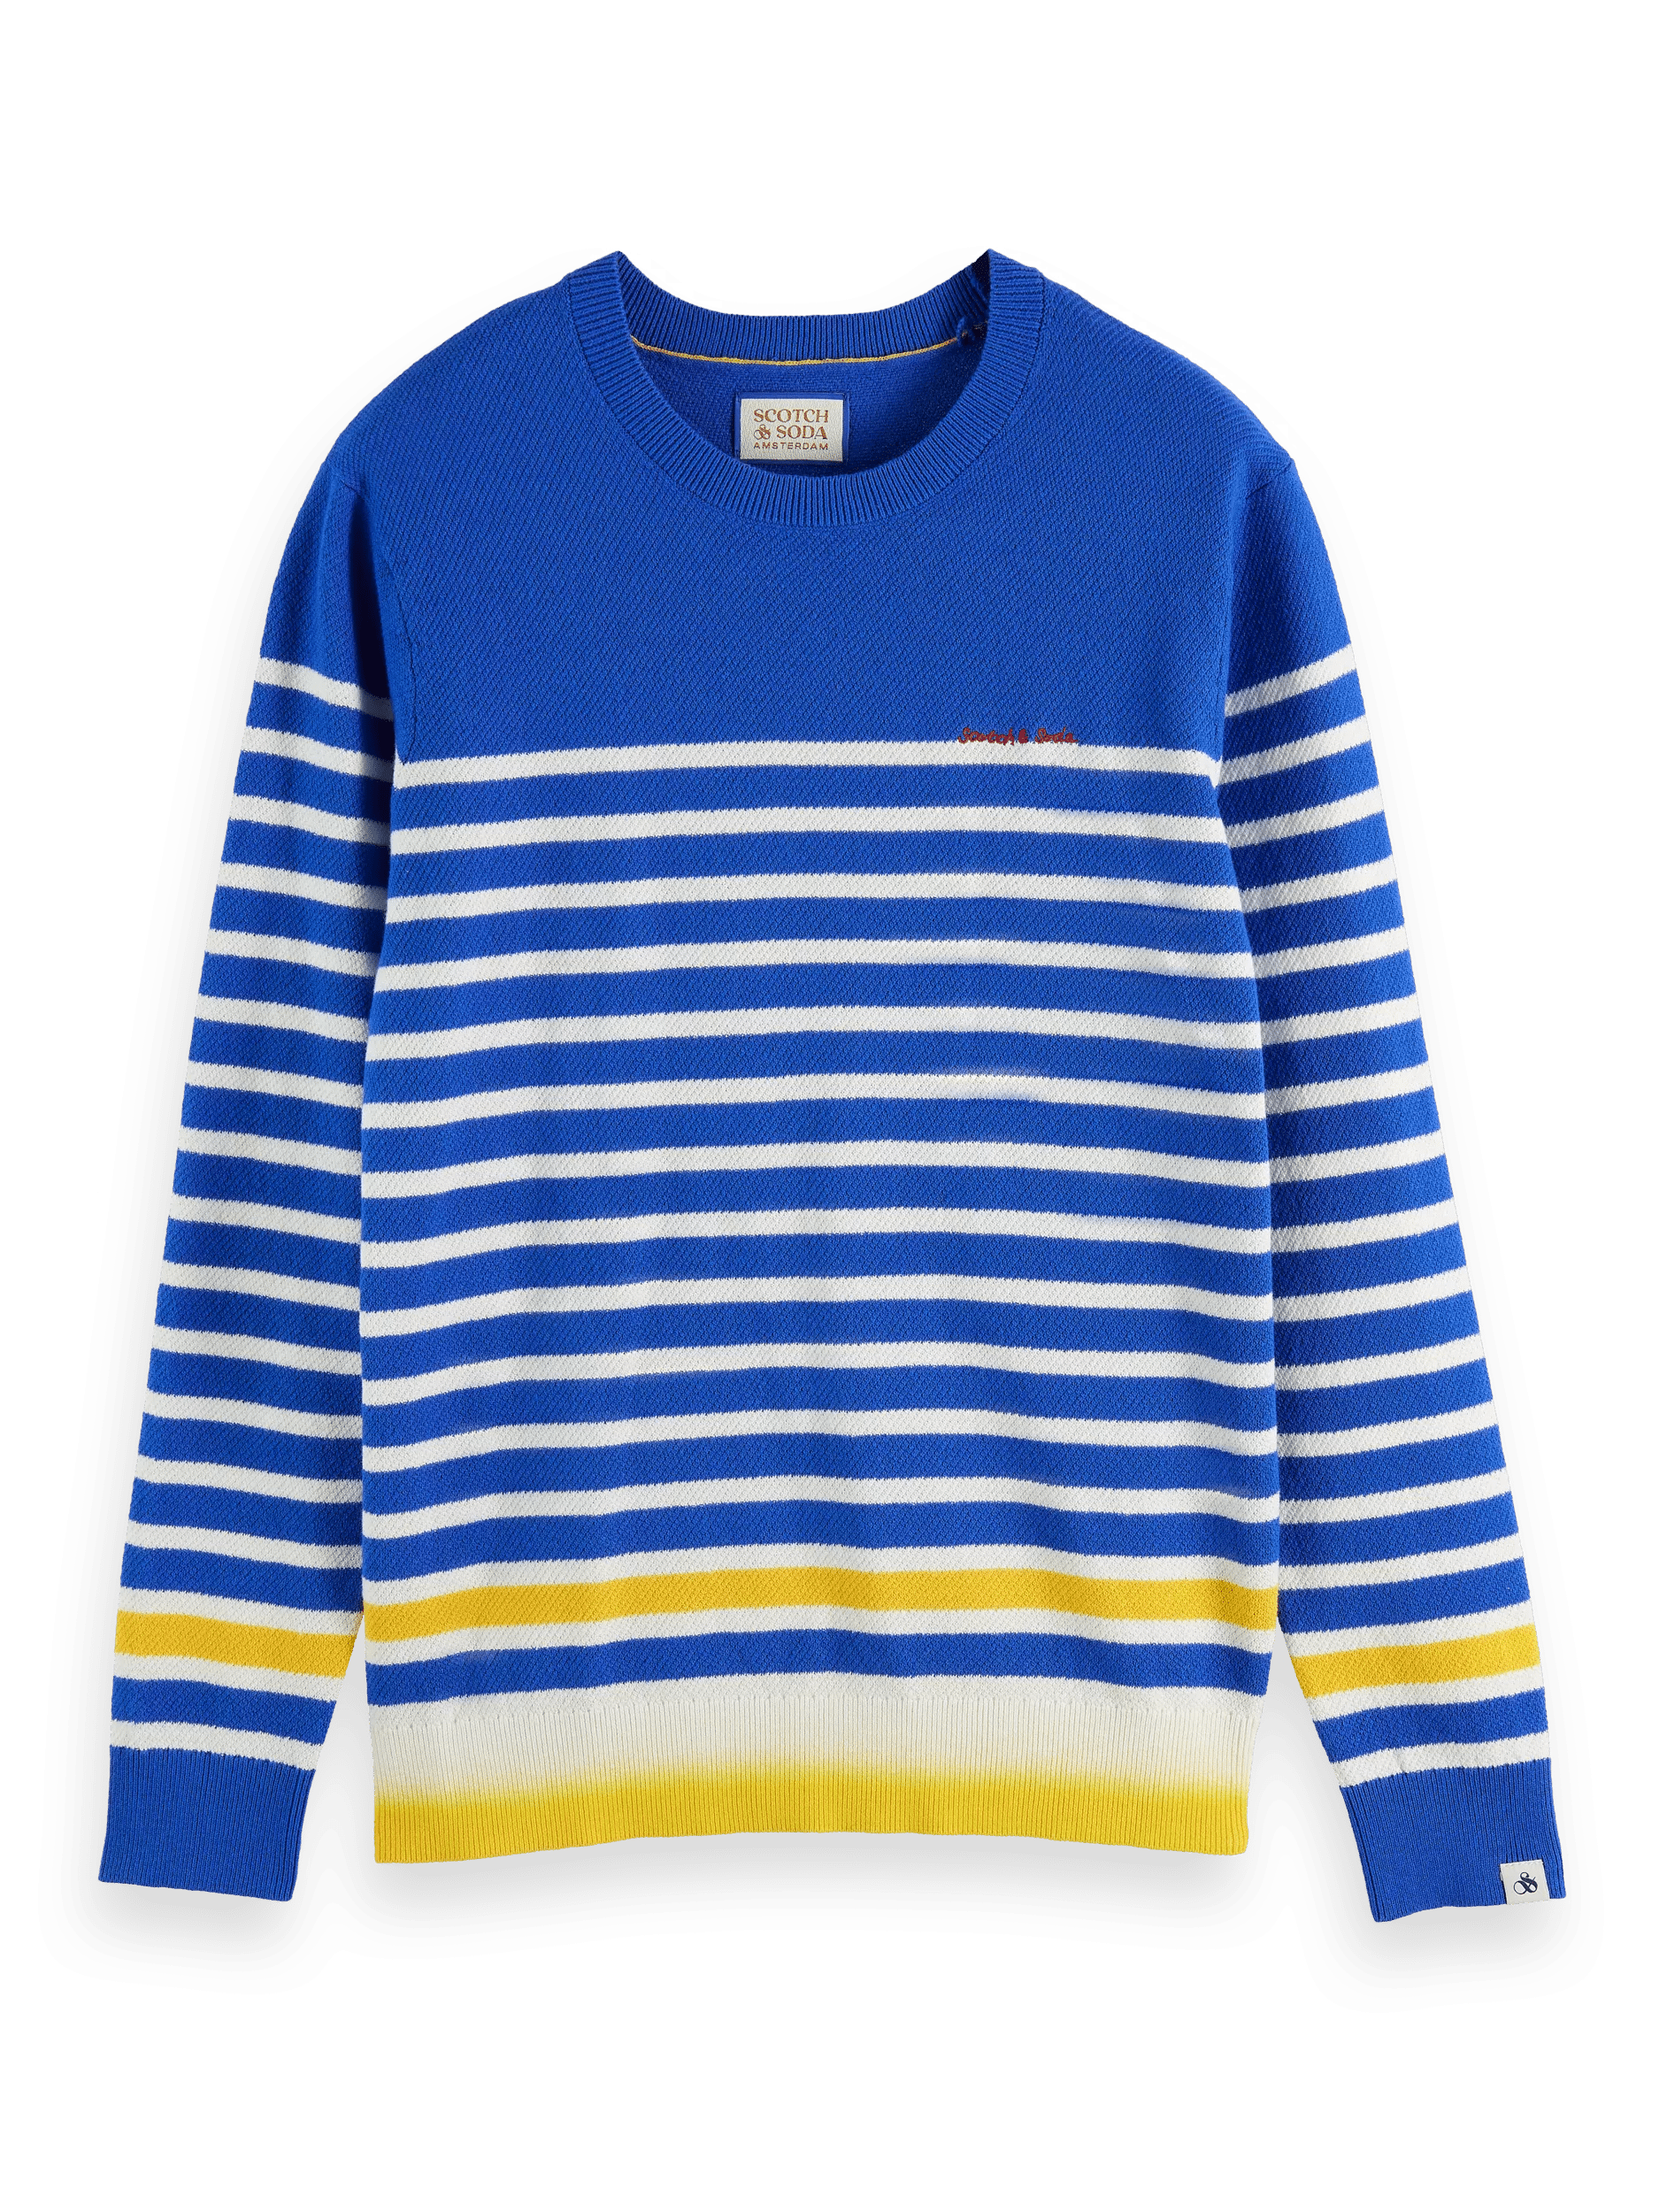 Scotch & Soda Breton striped pullover sweater FNT